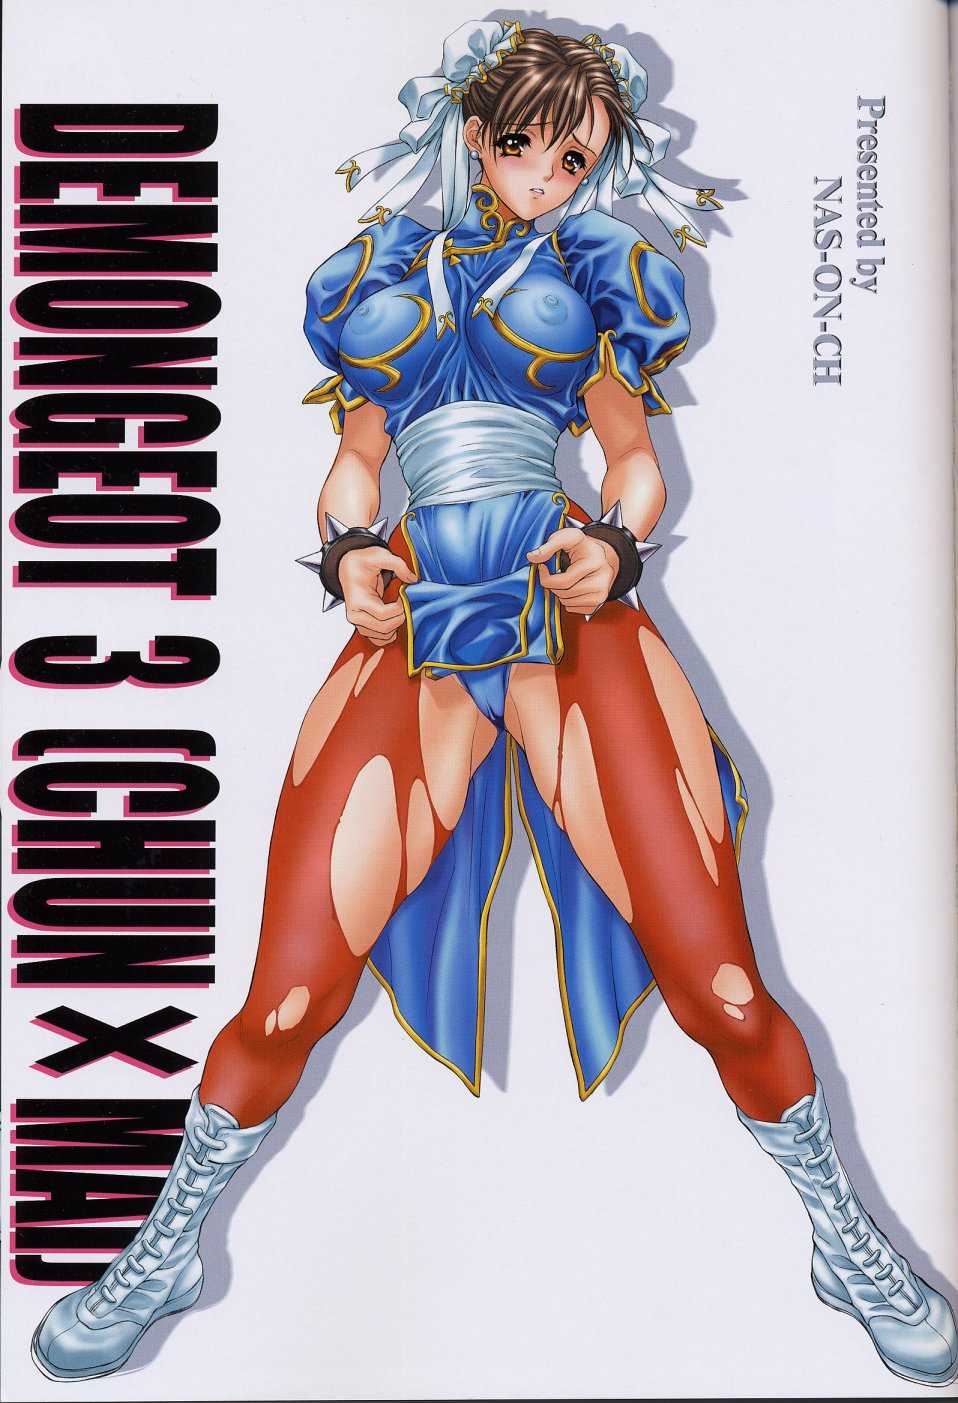 (C60) [NAS-ON-CH (NAS-O] Demongeot 3 (Chun x Mai) (King of Fighters / Street Fighter) [NAS-ON-CH (NAS-O)] DEMONGEOT 3 (CHUN X MAI) (キング･オブ･ファイターズ / ストリートファイター)